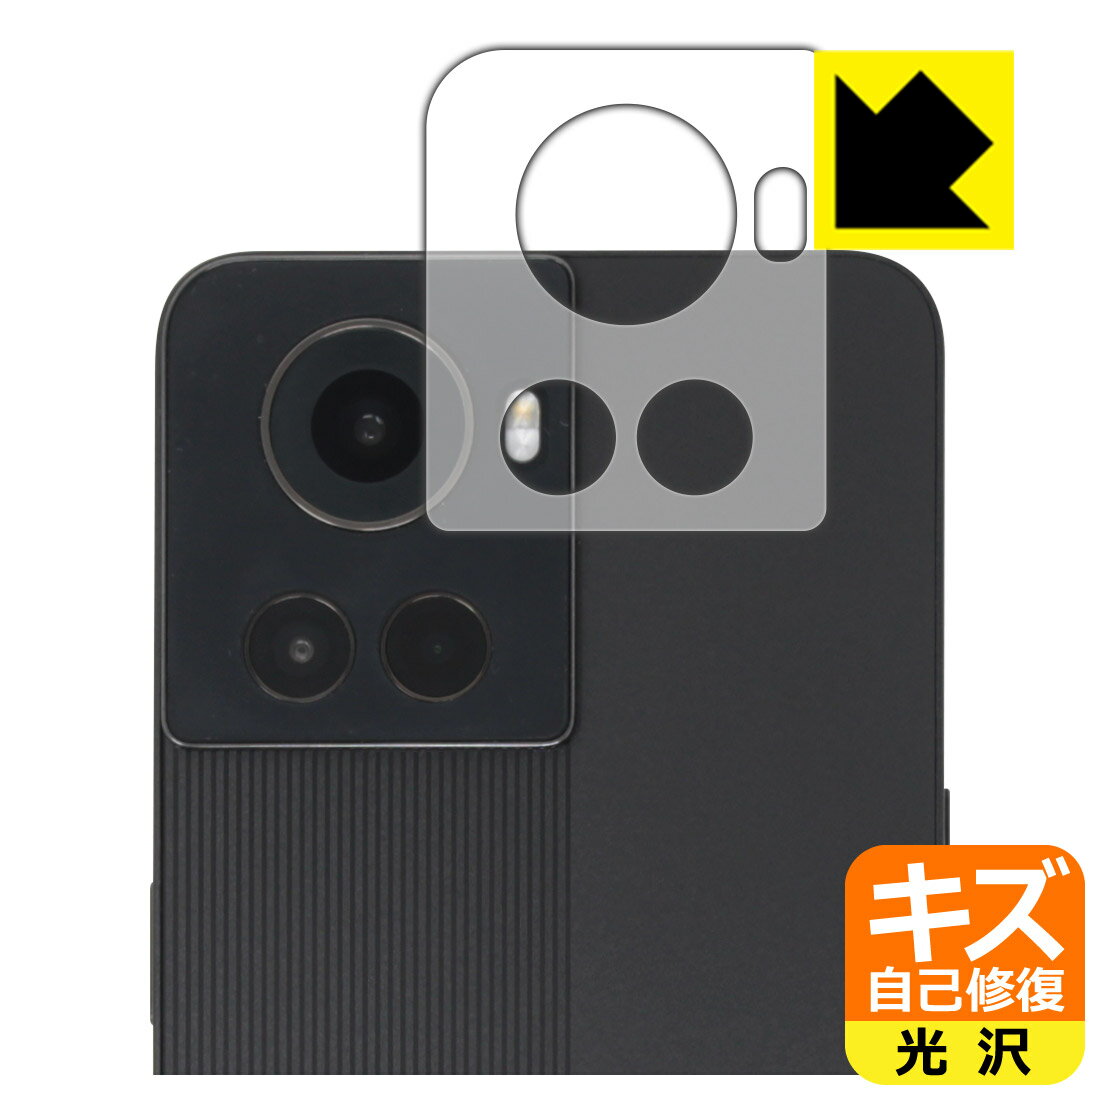 キズ自己修復保護フィルム OnePlus Ace (レンズ周辺部用) 日本製 自社製造直販